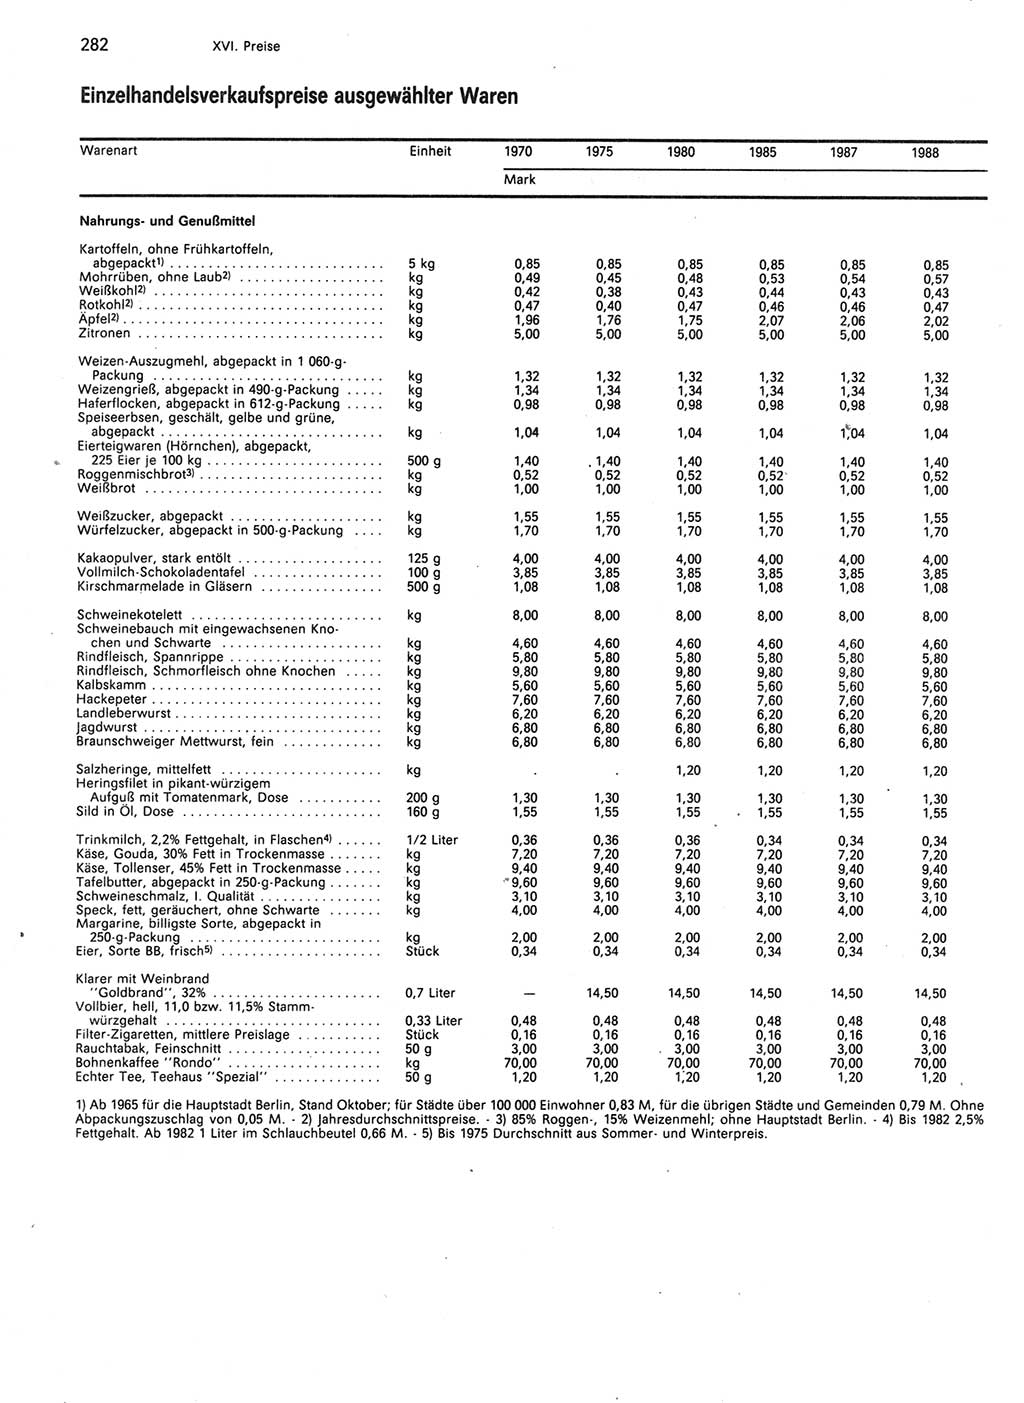 Statistisches Jahrbuch der Deutschen Demokratischen Republik (DDR) 1989, Seite 282 (Stat. Jb. DDR 1989, S. 282)